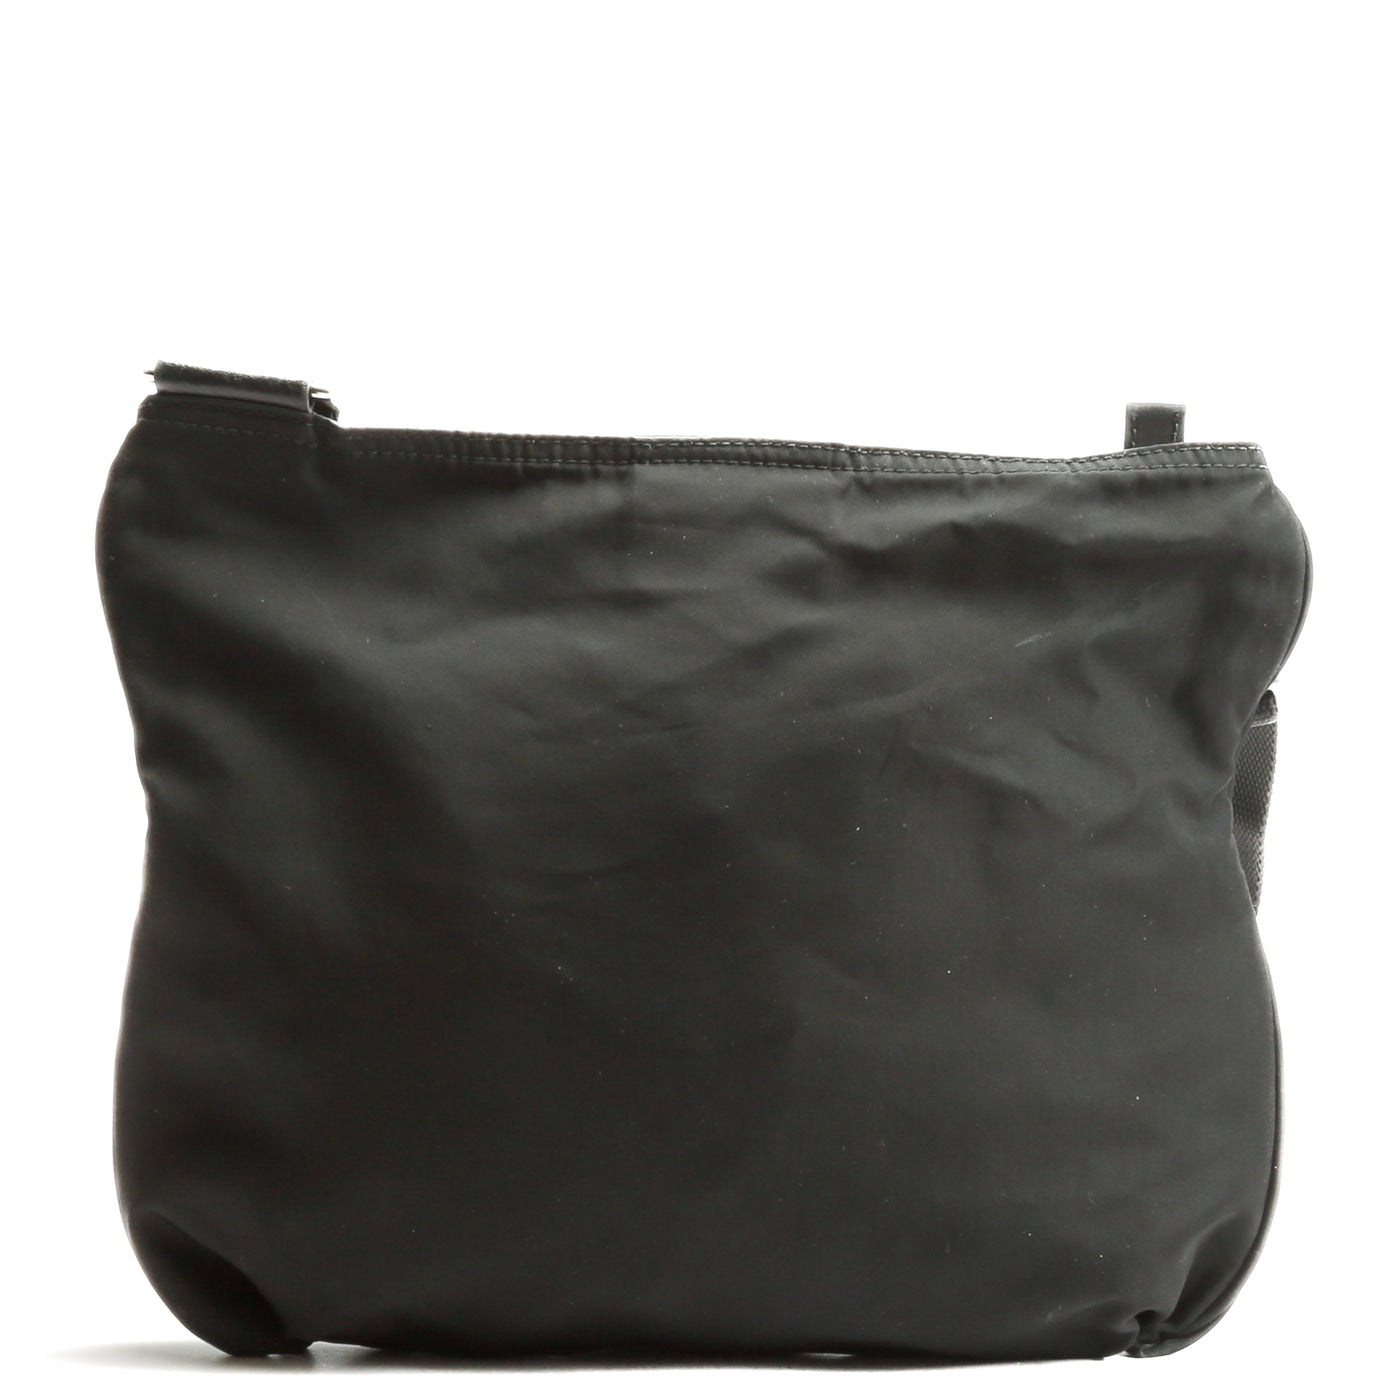 PRADA Vela Messenger Bag - Black - OUTLET FINAL SALE